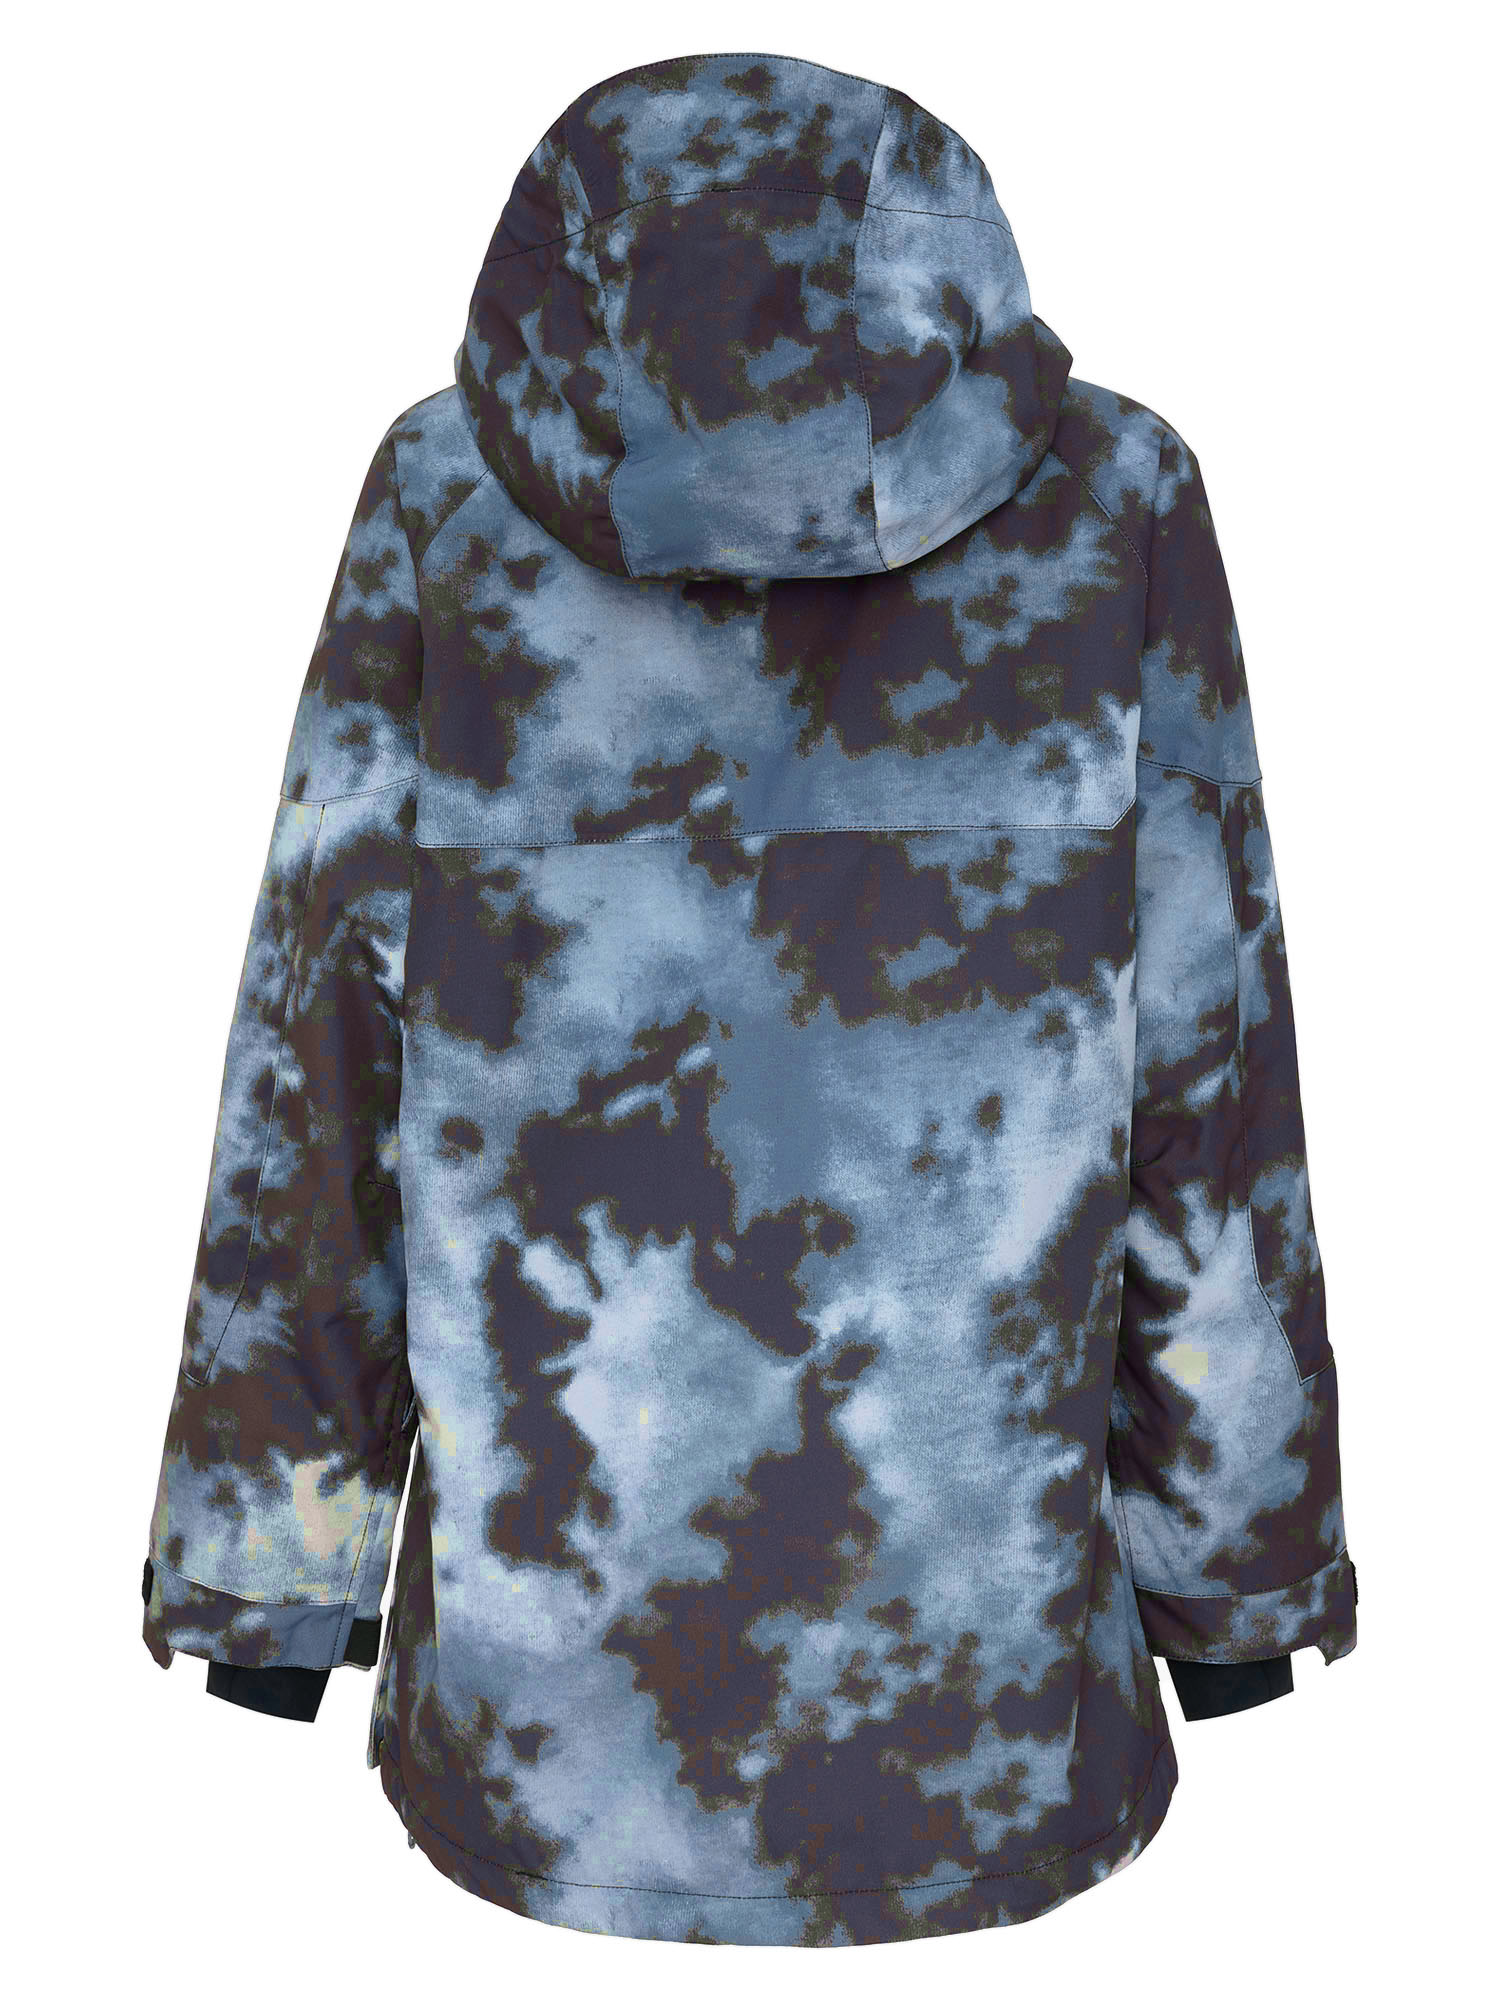 Куртка сноубордическая Анорак 686 Upton Green Nebula